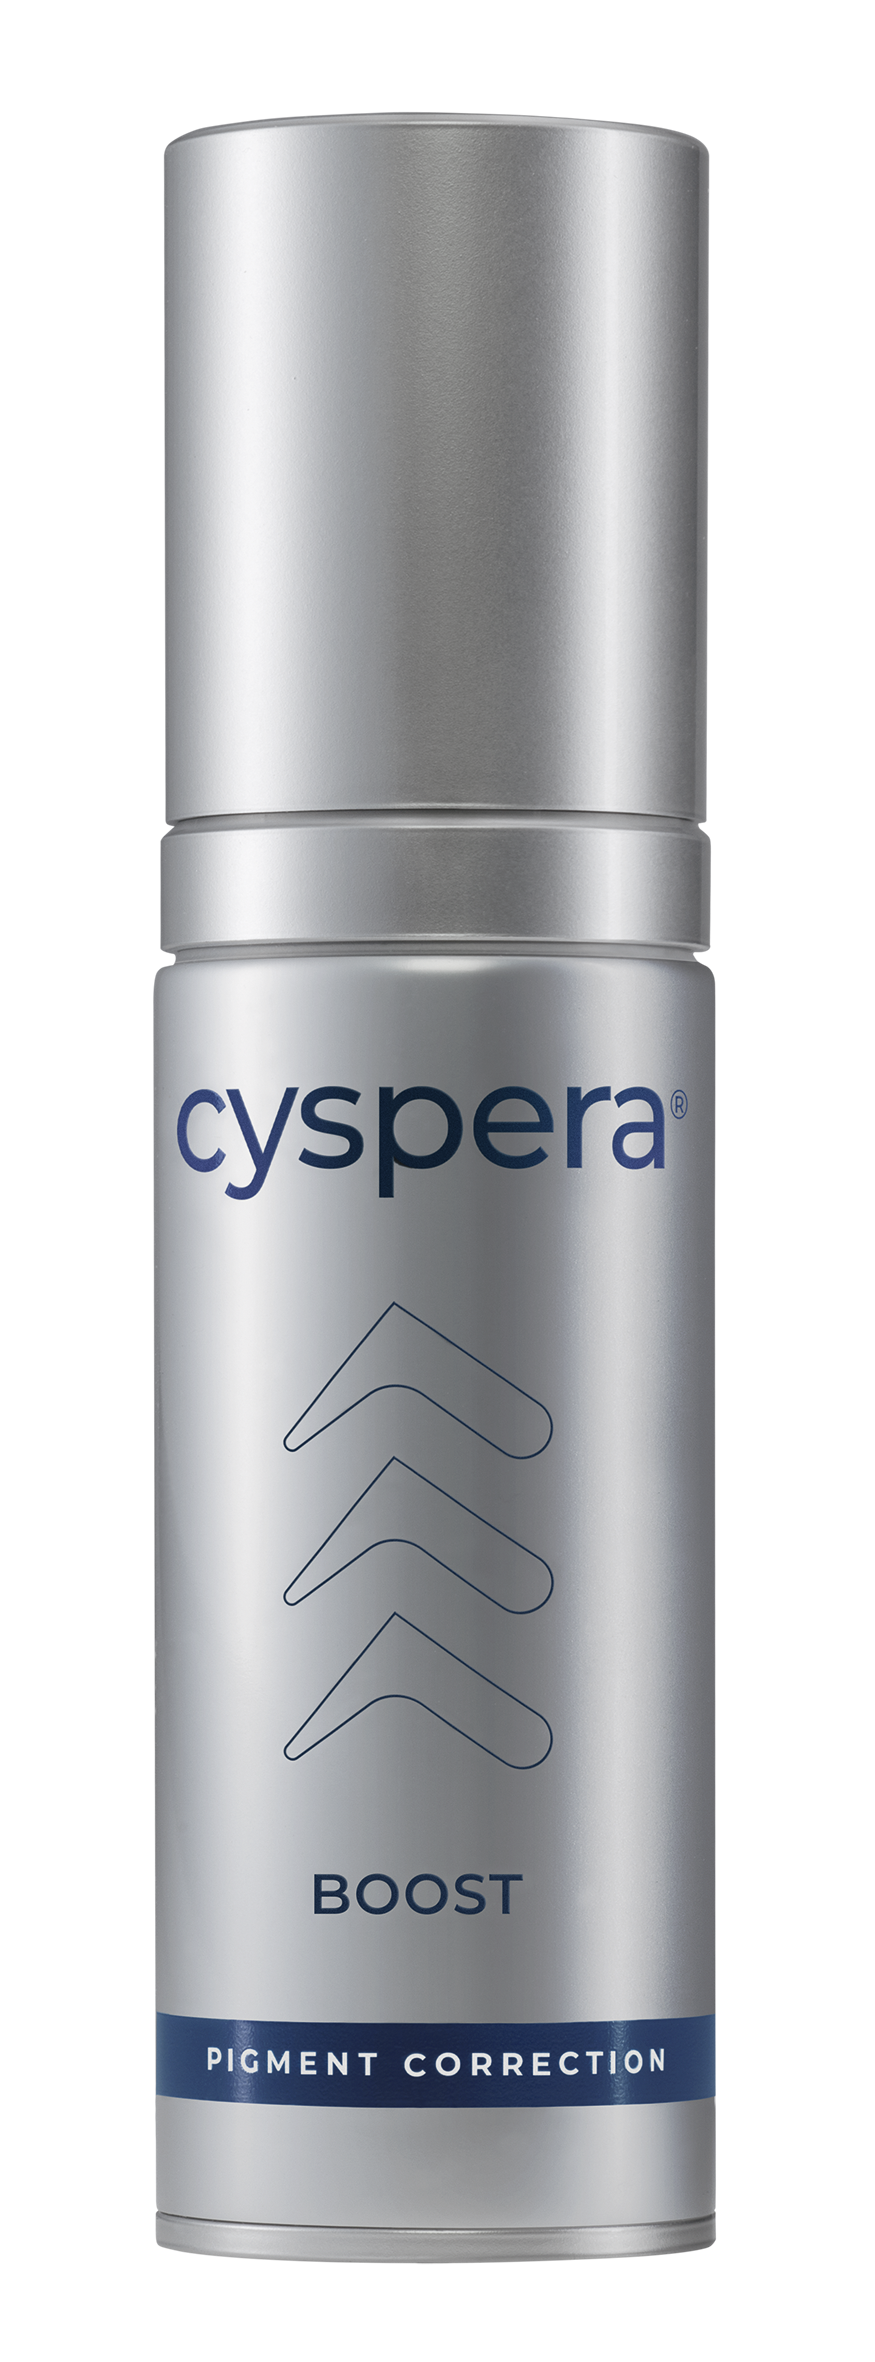 Cyspera Boost (30ml)